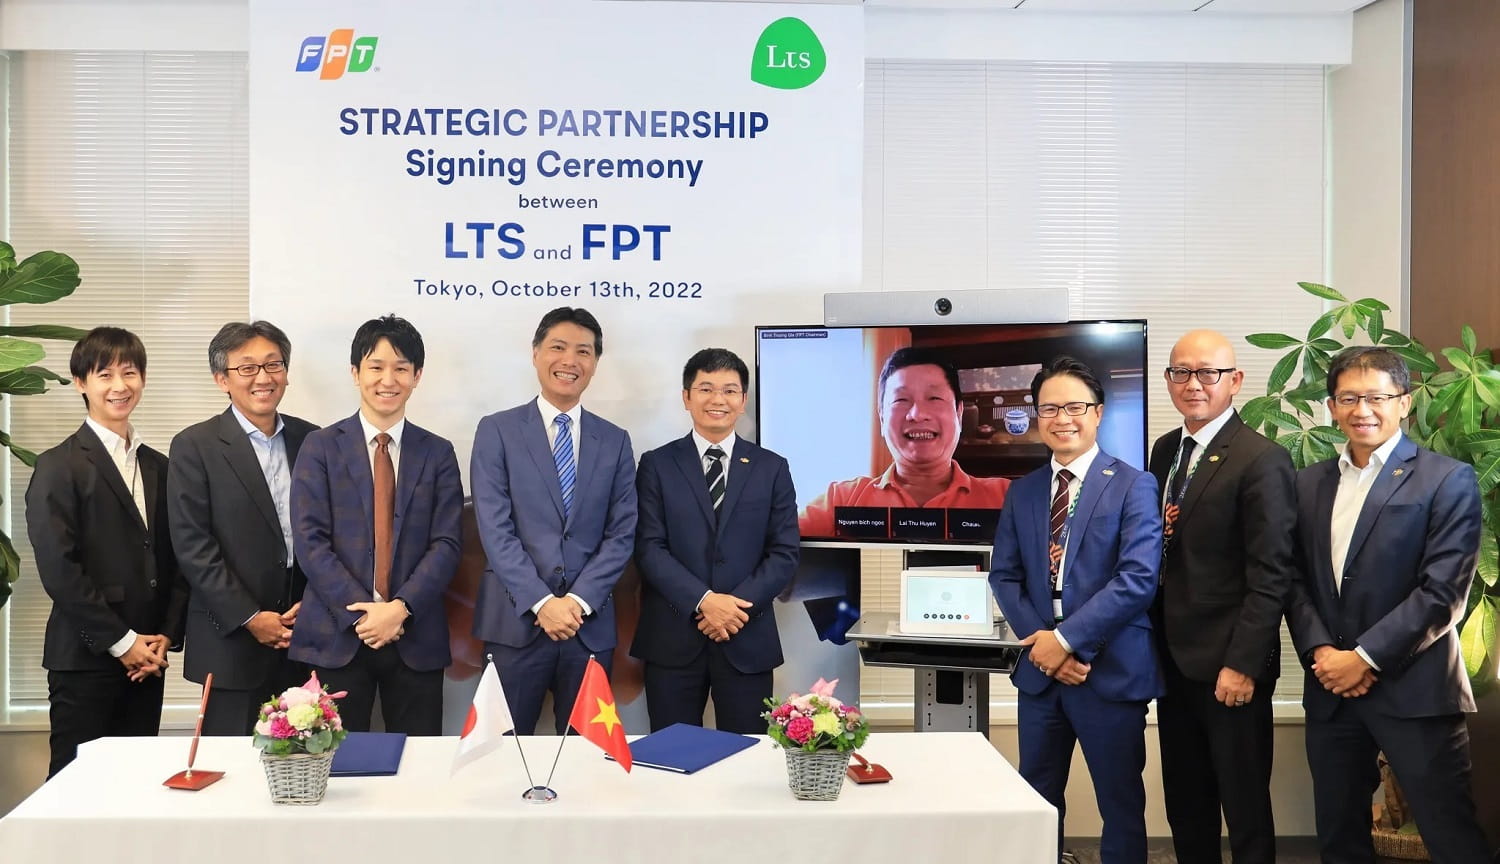 Ban lãnh đạo Tập đoàn FPT và LTS, Inc. tại lễ ký kết ngày 13/10/2022 tại Tokyo, Nhật Bản